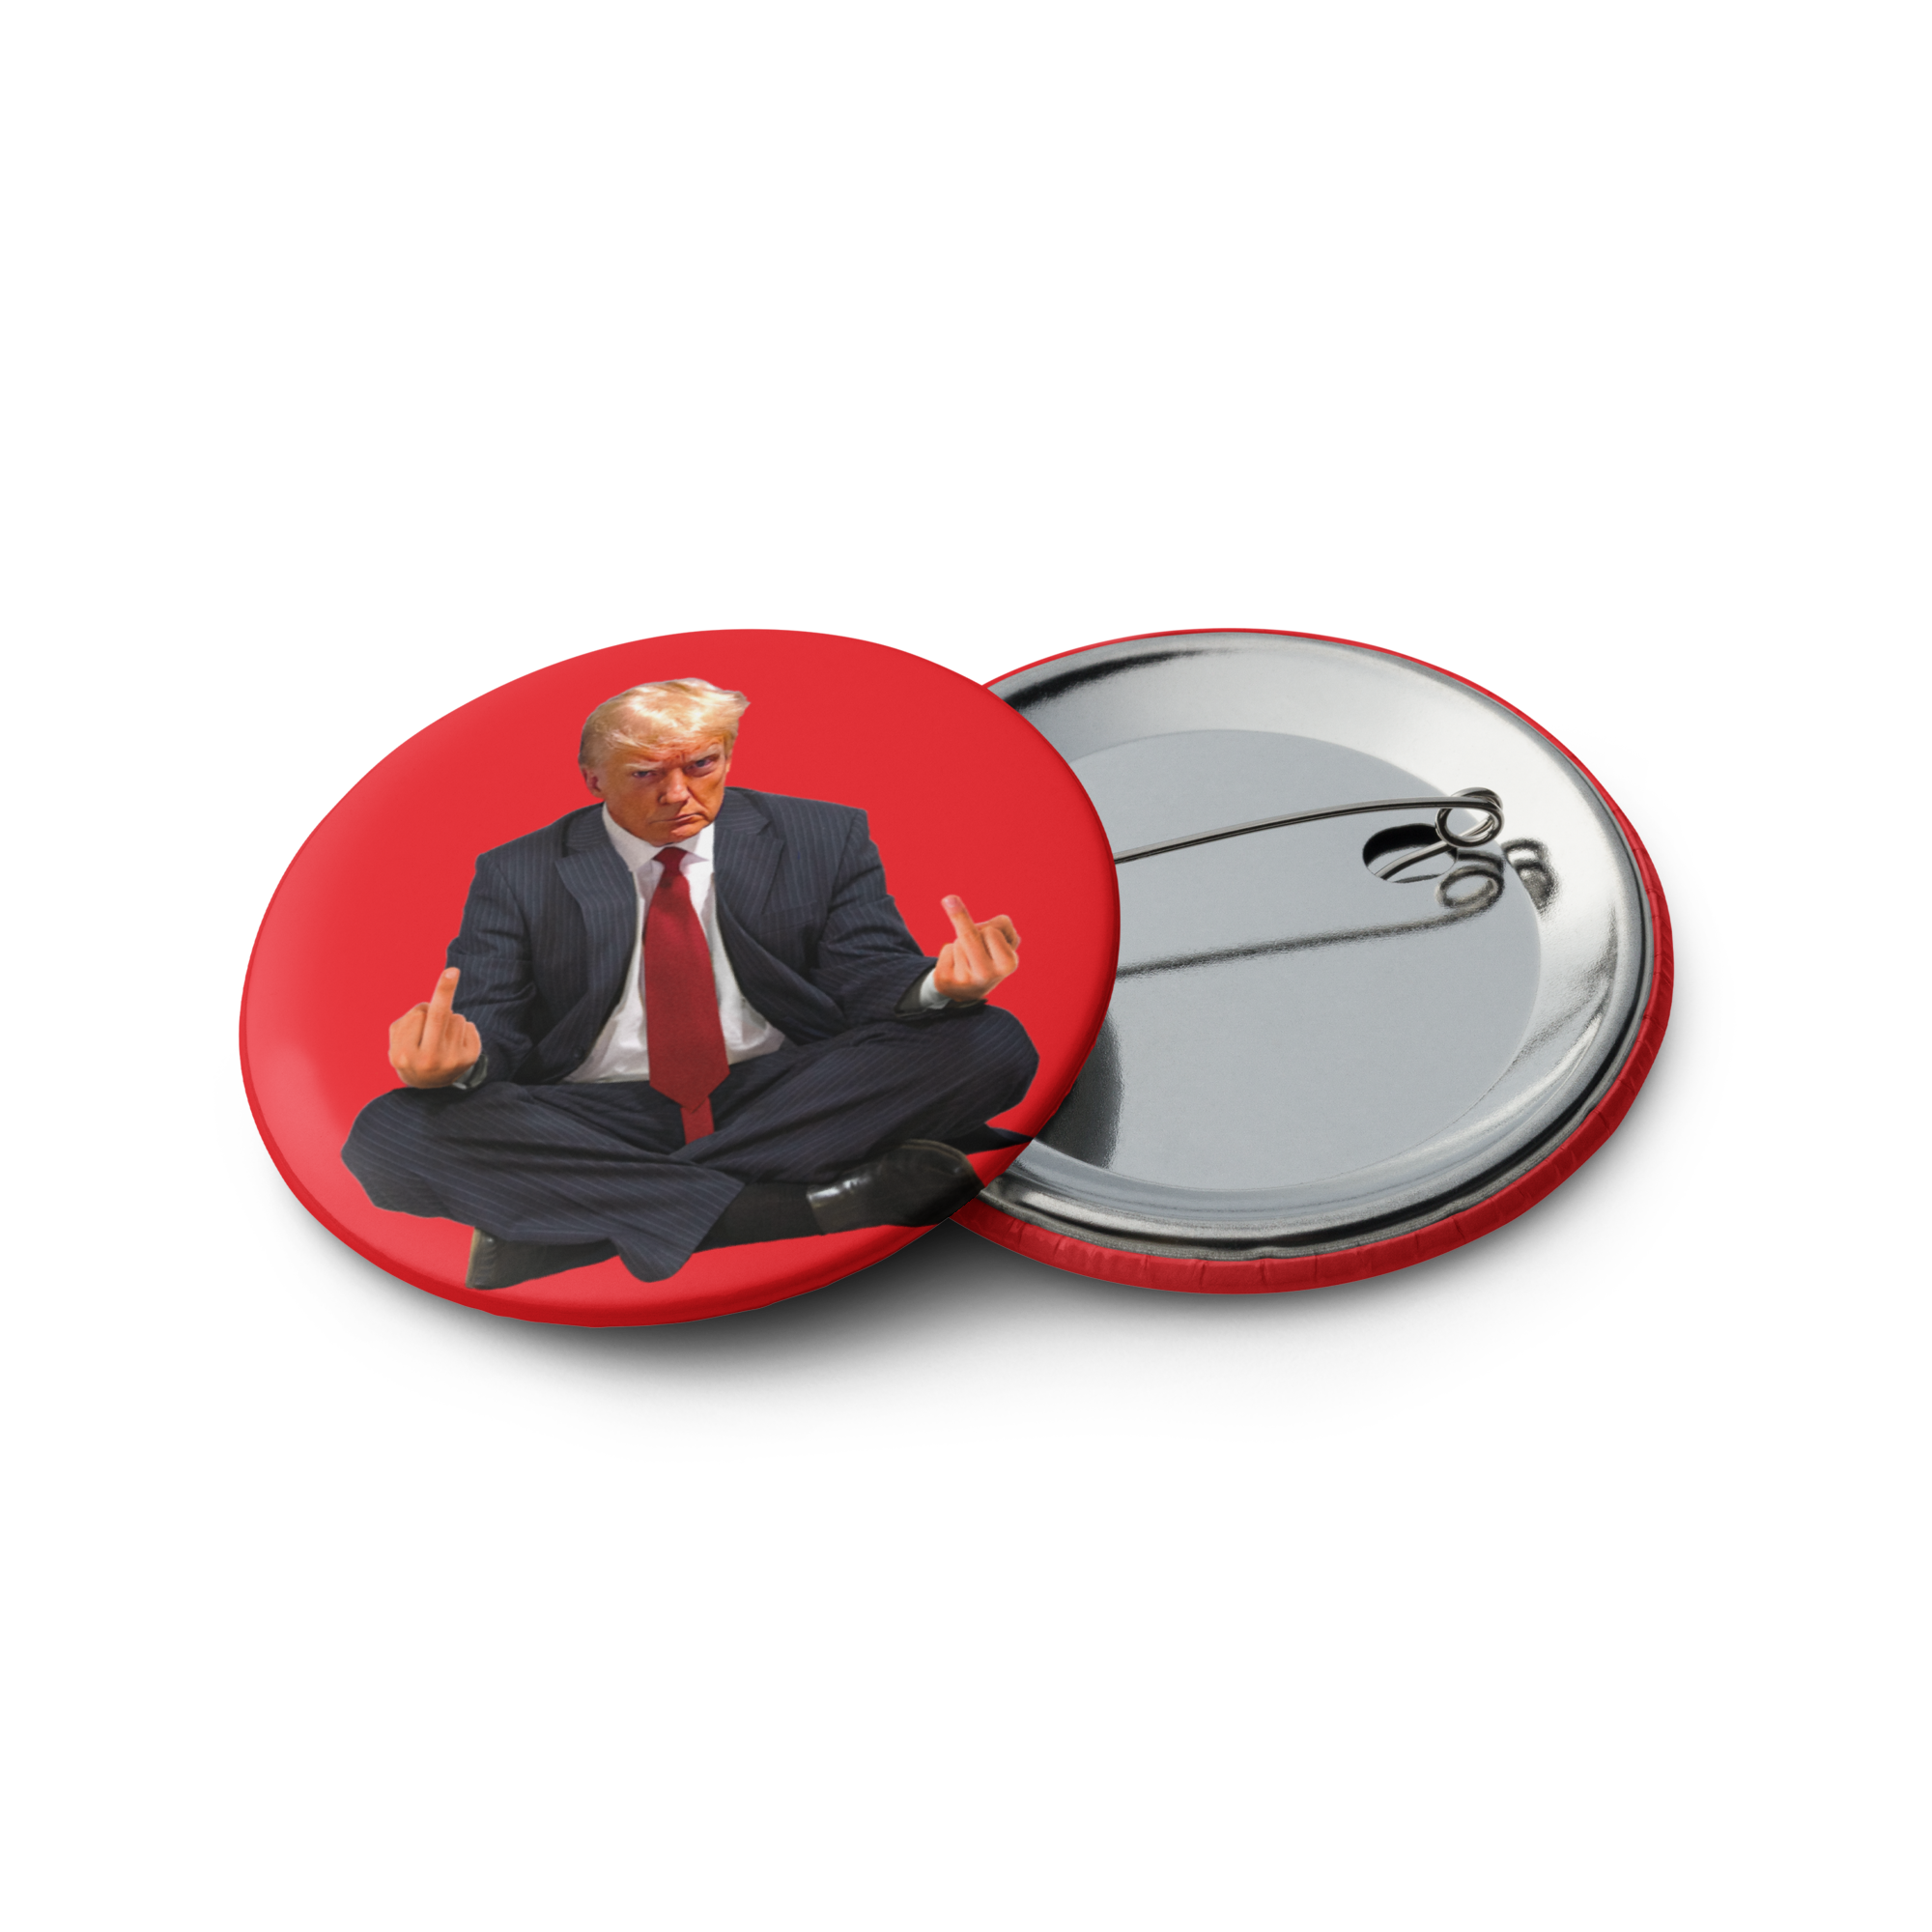 Zen of Trump Mugshot Set of Buttons